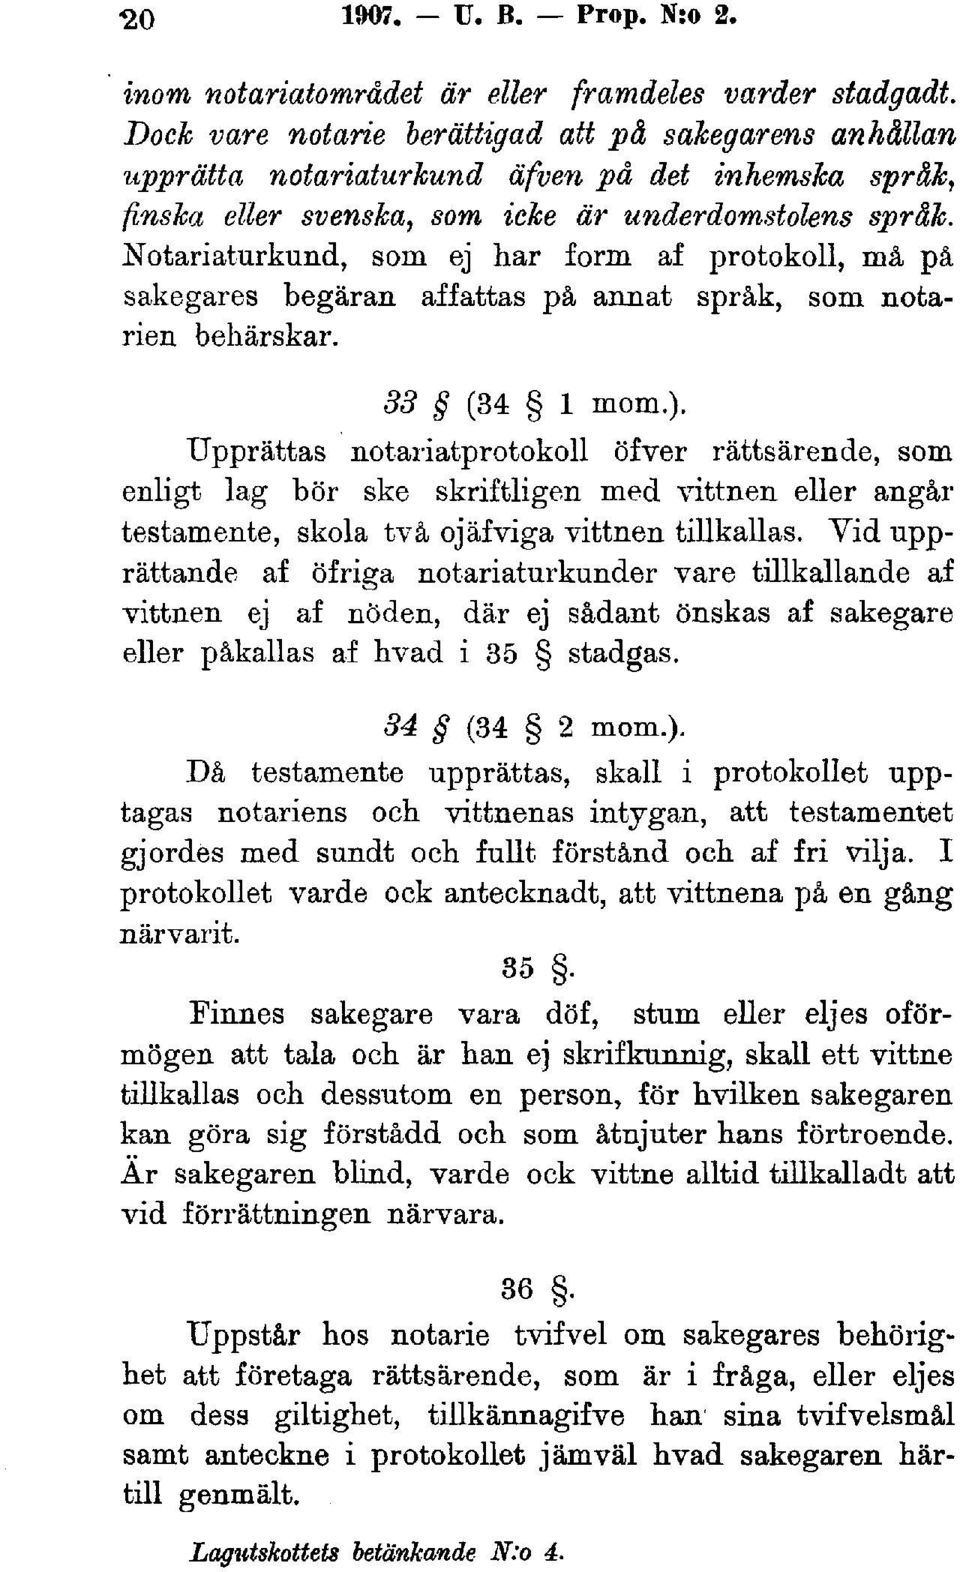 Notariaturkund, som ej har form af protokoll, må på sakegares begäran affattas på annat språk, som notarien behärskar. 33 (34 l mom.).